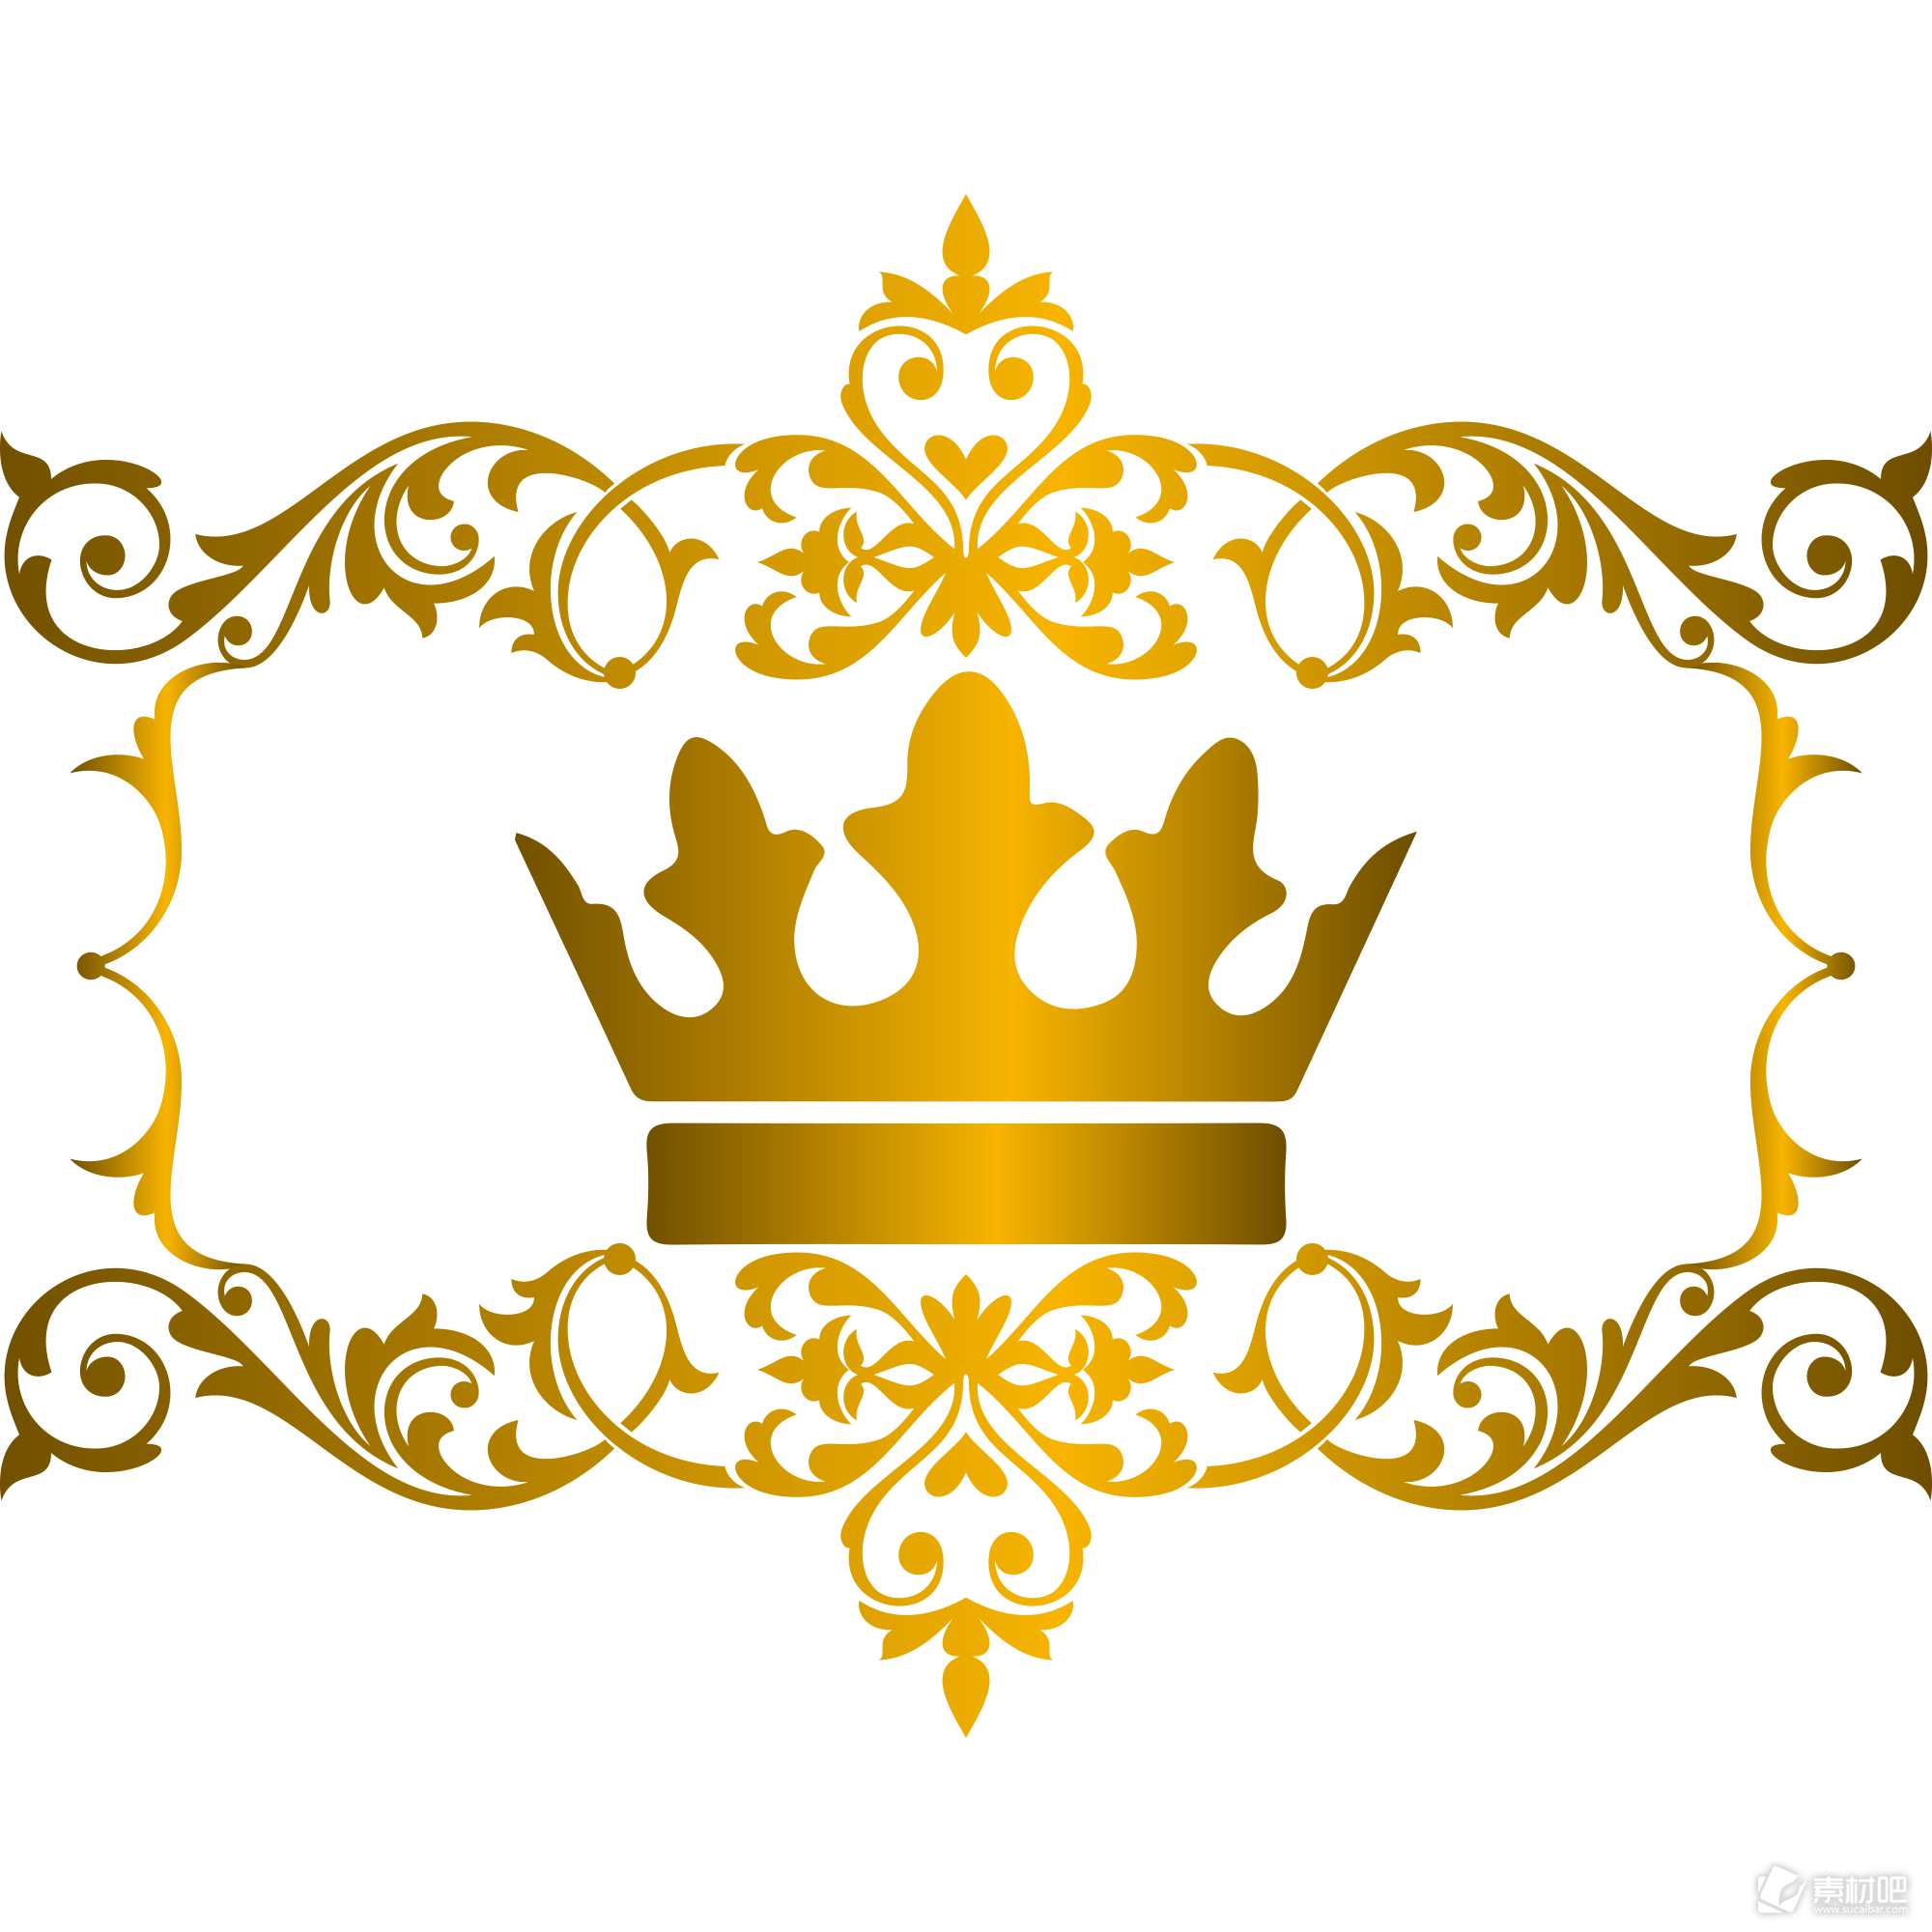 欧式风格金色皇冠矢量素材